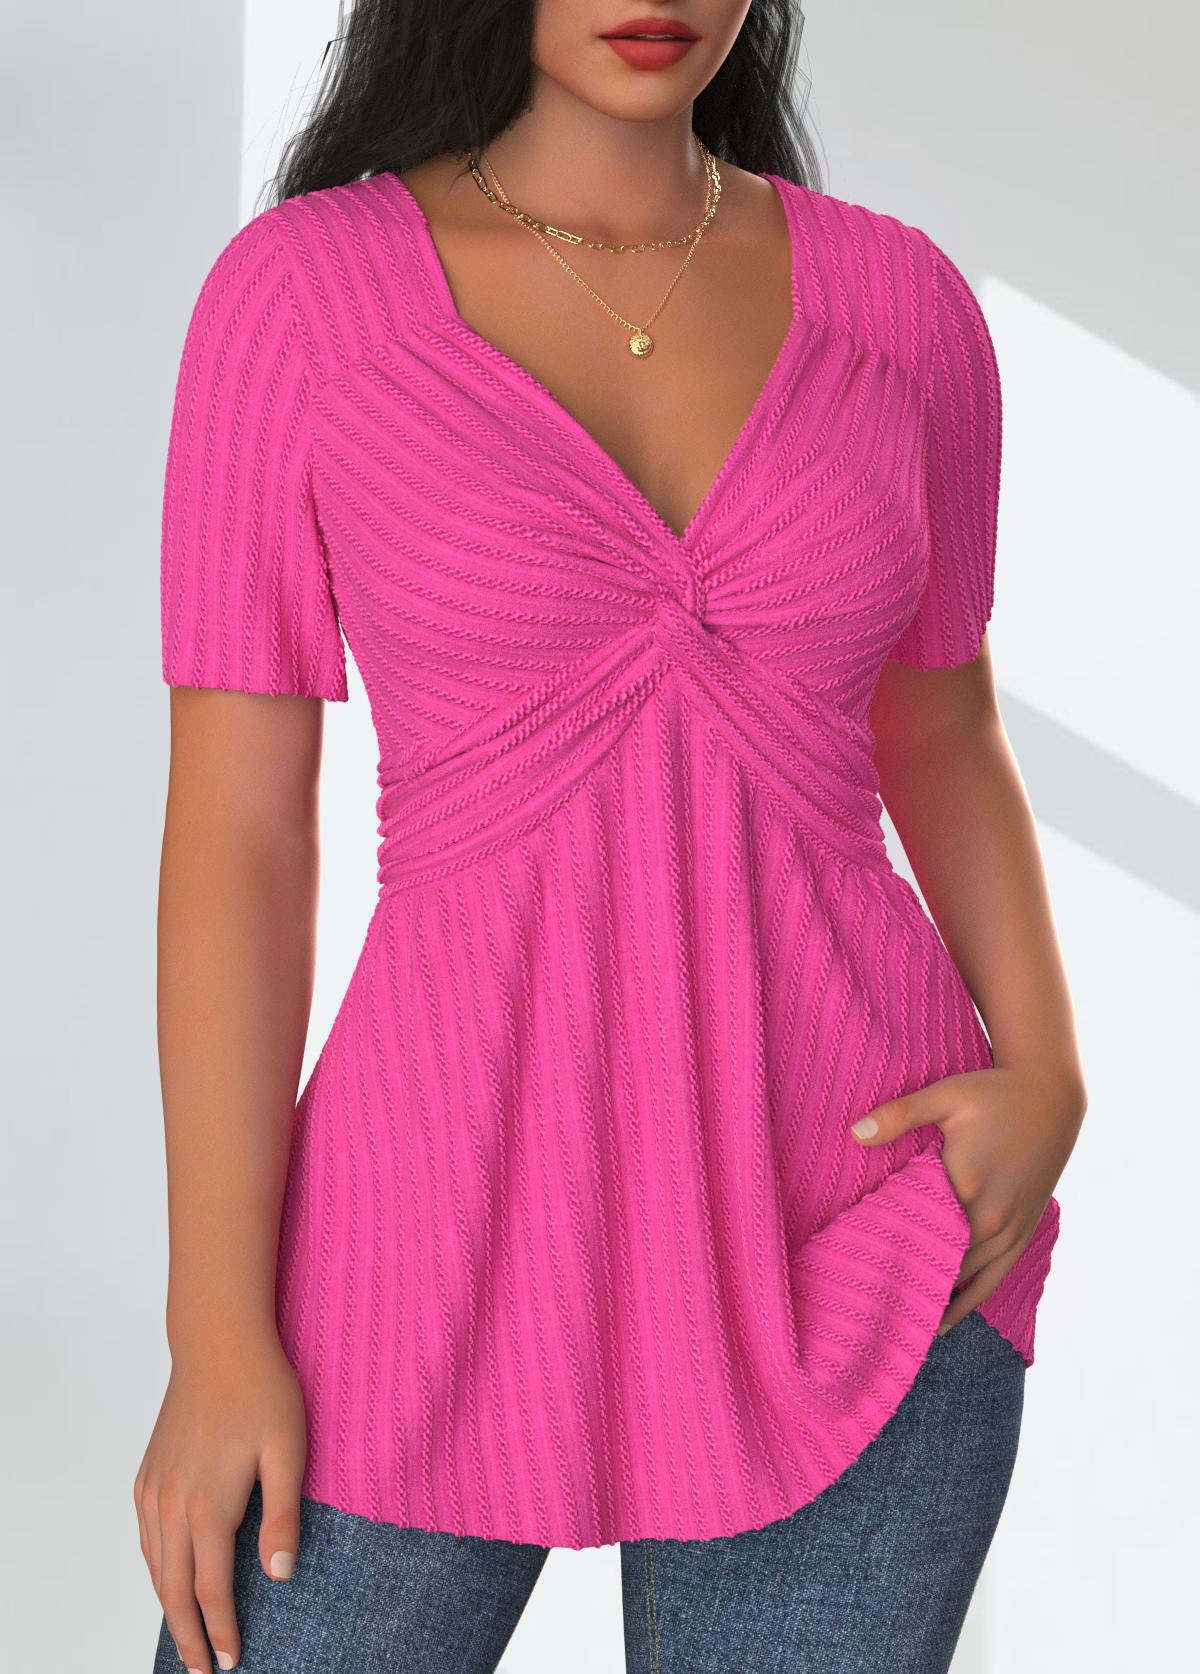 Hot Pink Textured Fabric Short Sleeve T Shirt